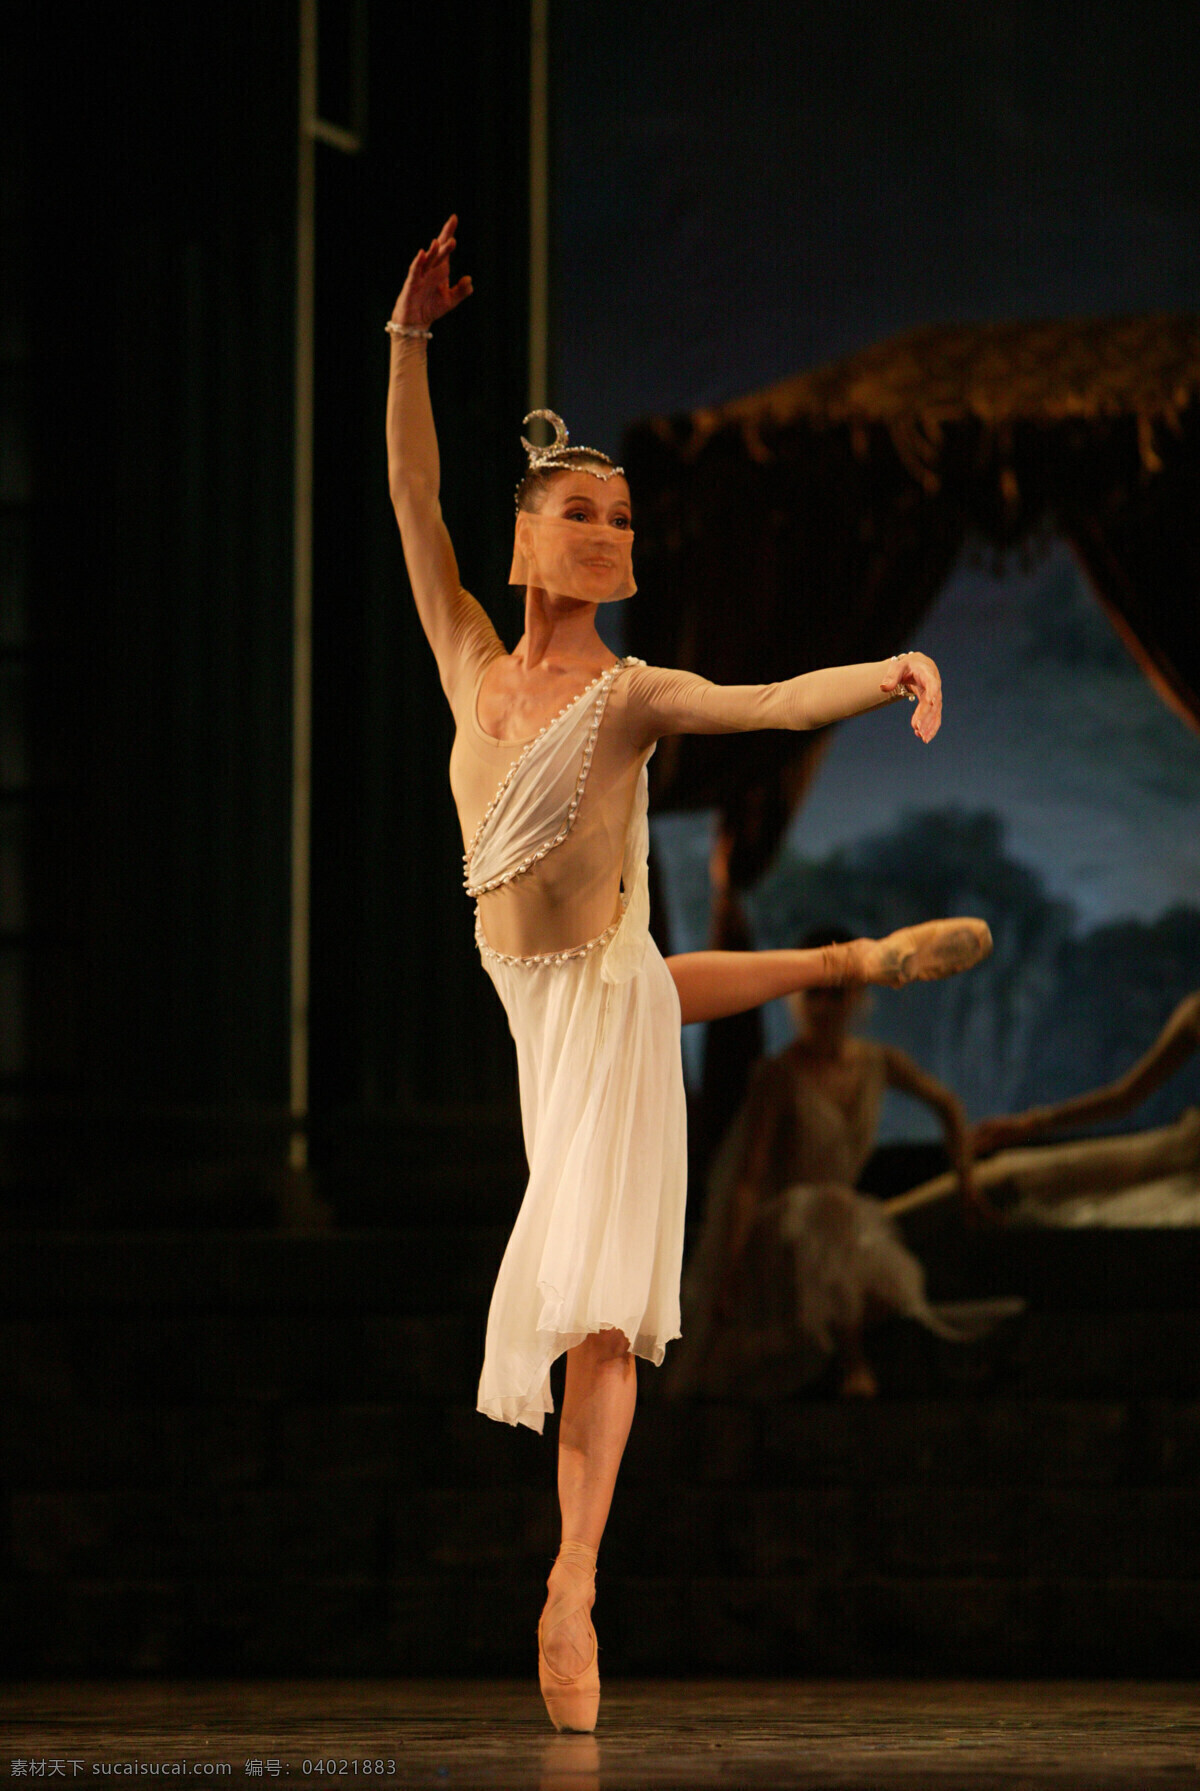 芭蕾 之美 剧照 地点 北京大学 百年 讲堂 法国 国家 芭蕾舞团 2005年版 文化艺术